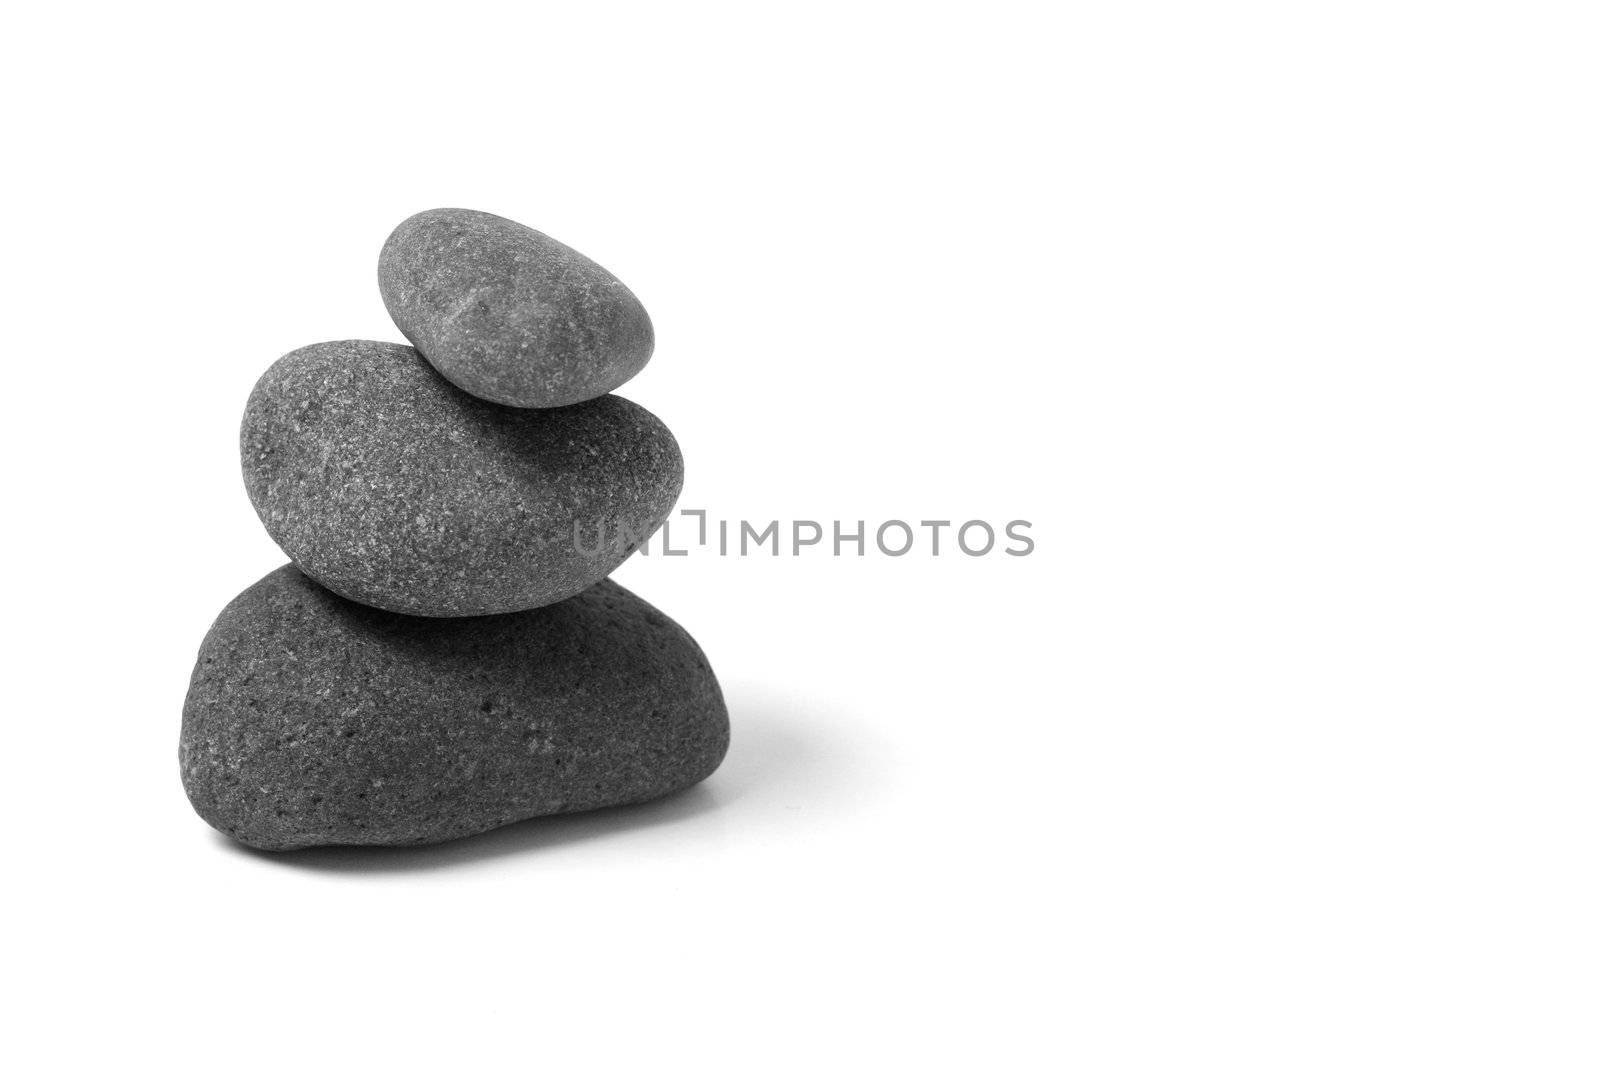 An arrangement of black stones